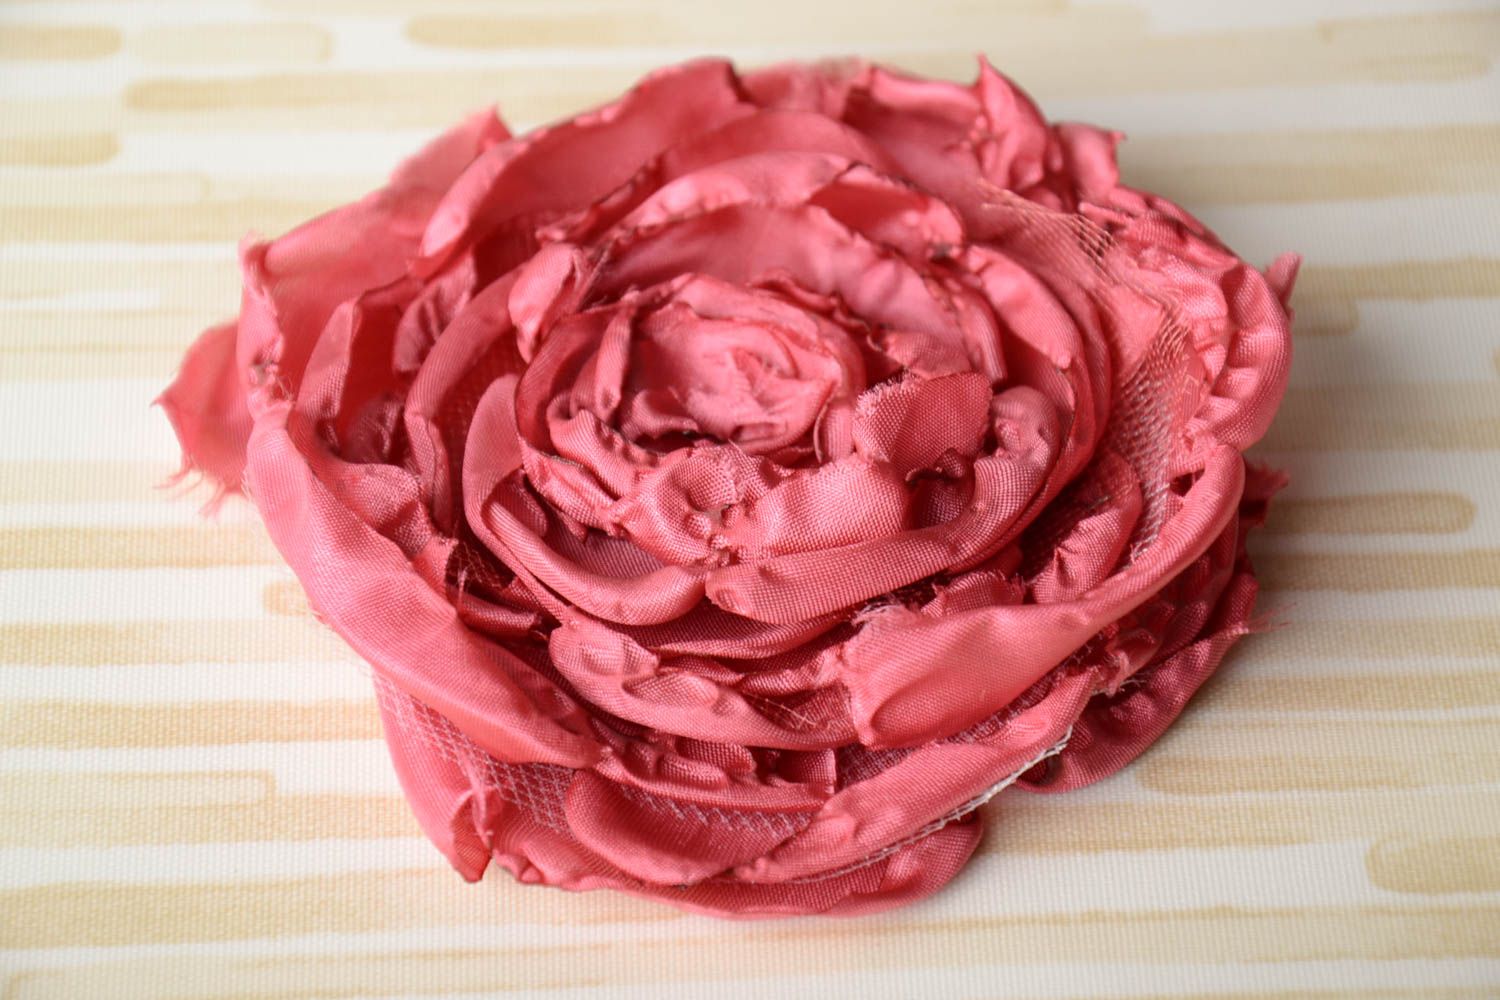 Брошь цветок из лент розовая крупная красивая нарядная стильная ручной работы фото 1